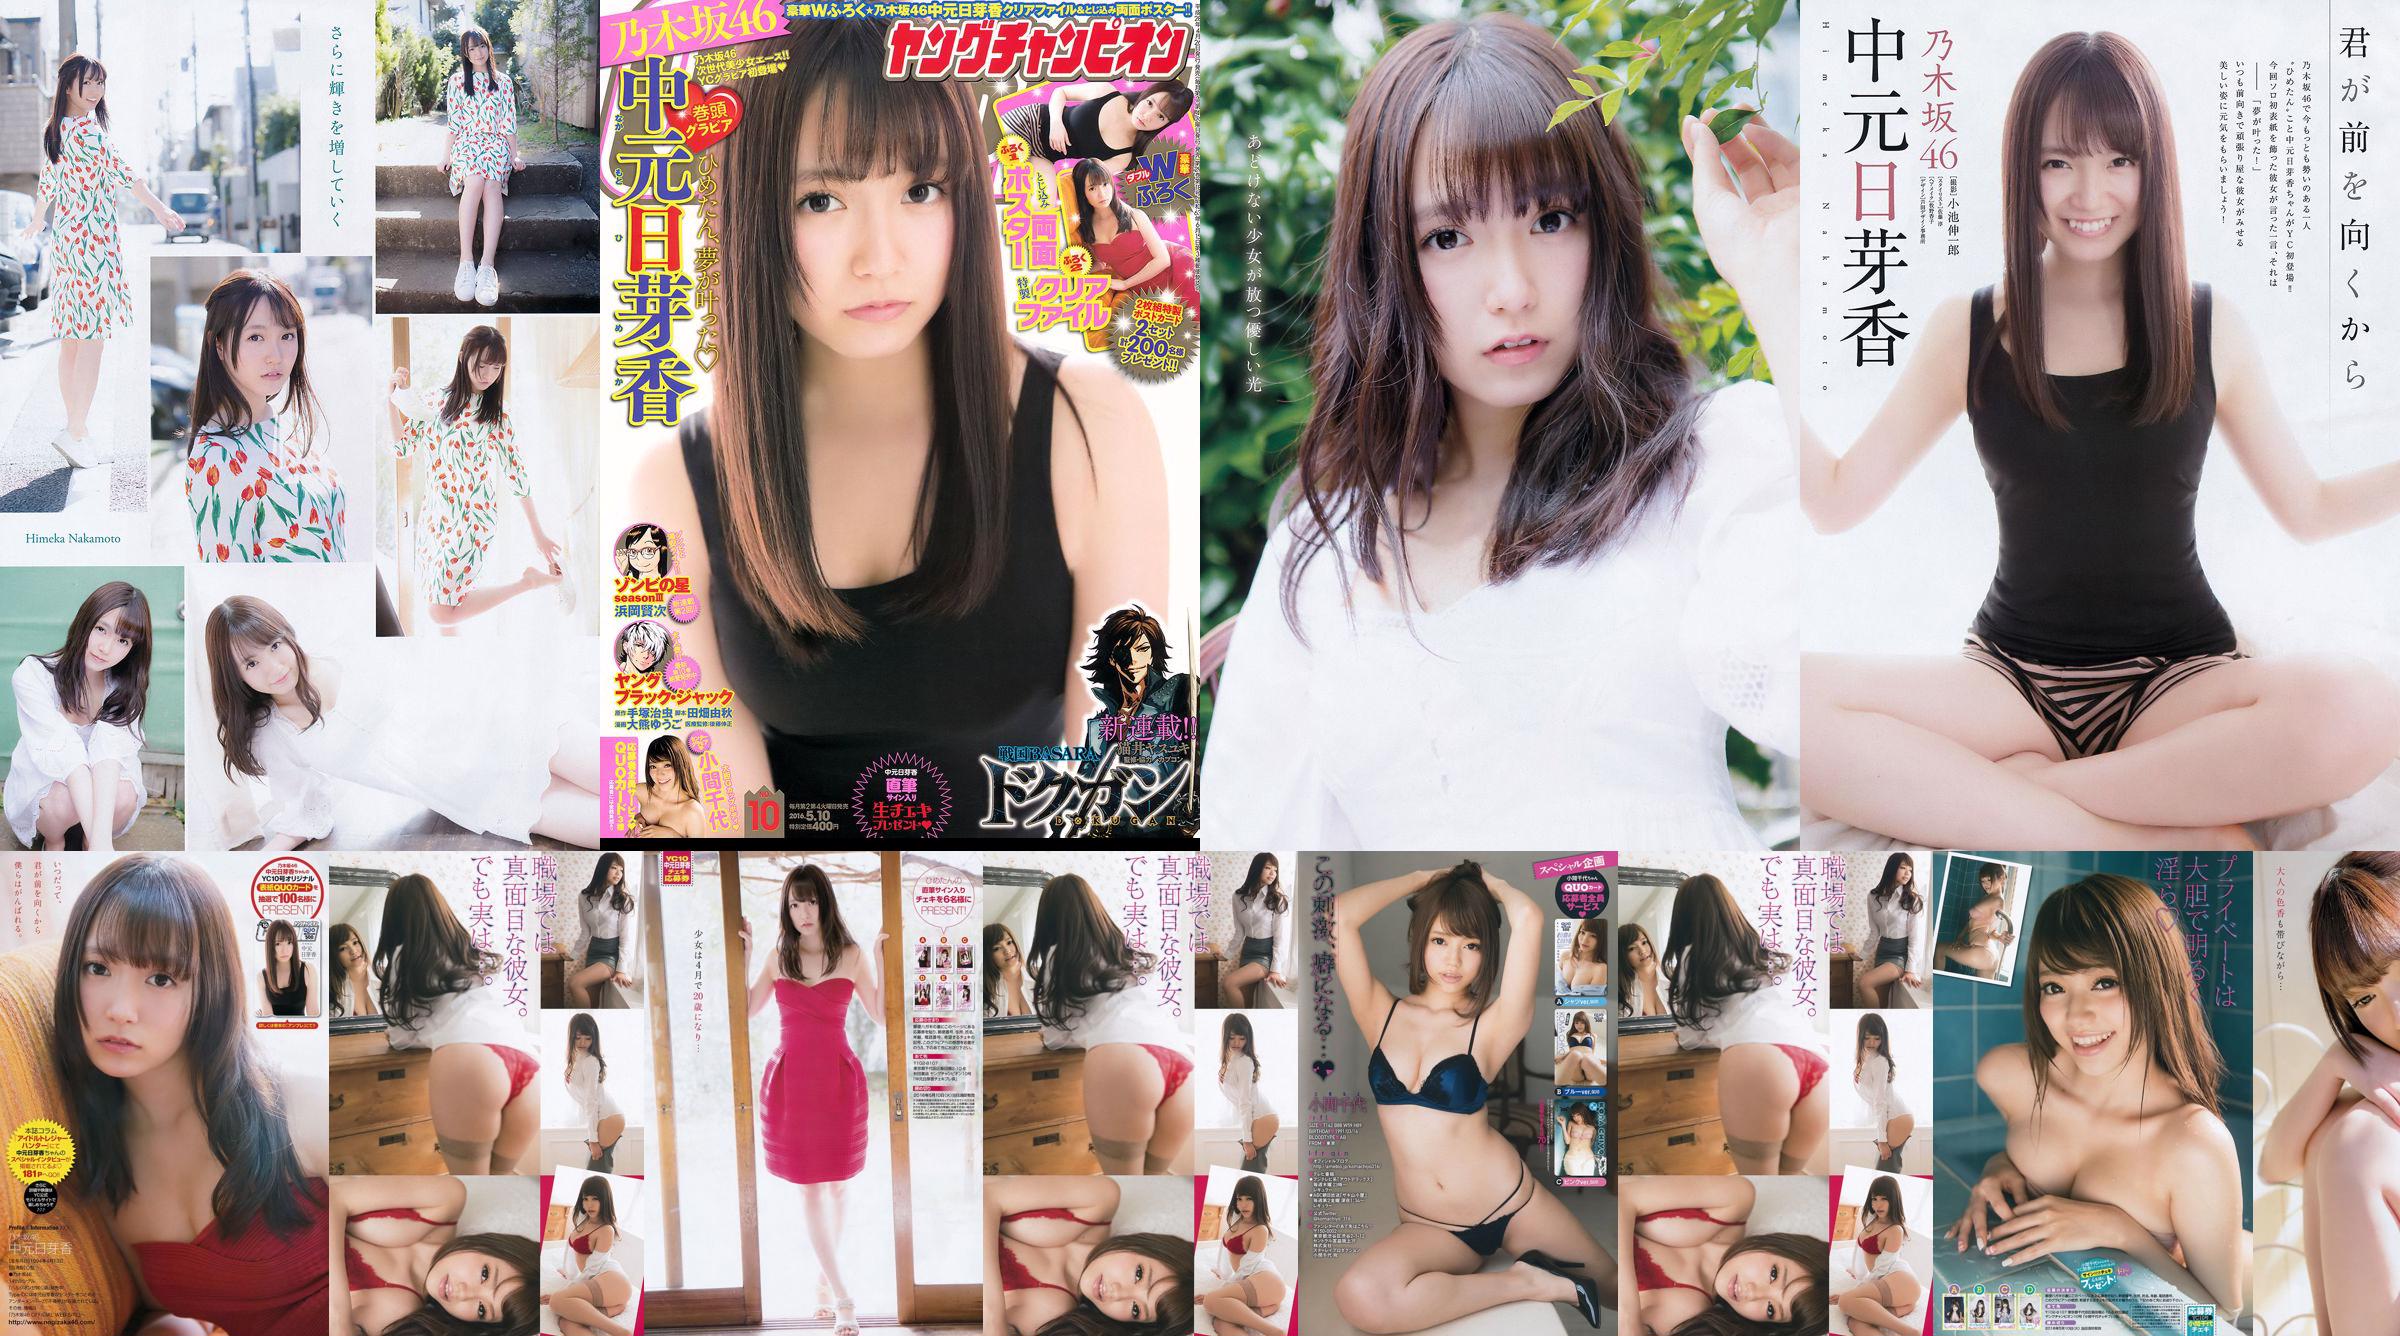 [Junger Champion] Nakamoto Nichiko Koma Chiyo 2016 Nr. 10 Fotomagazin No.2b4bd6 Seite 2